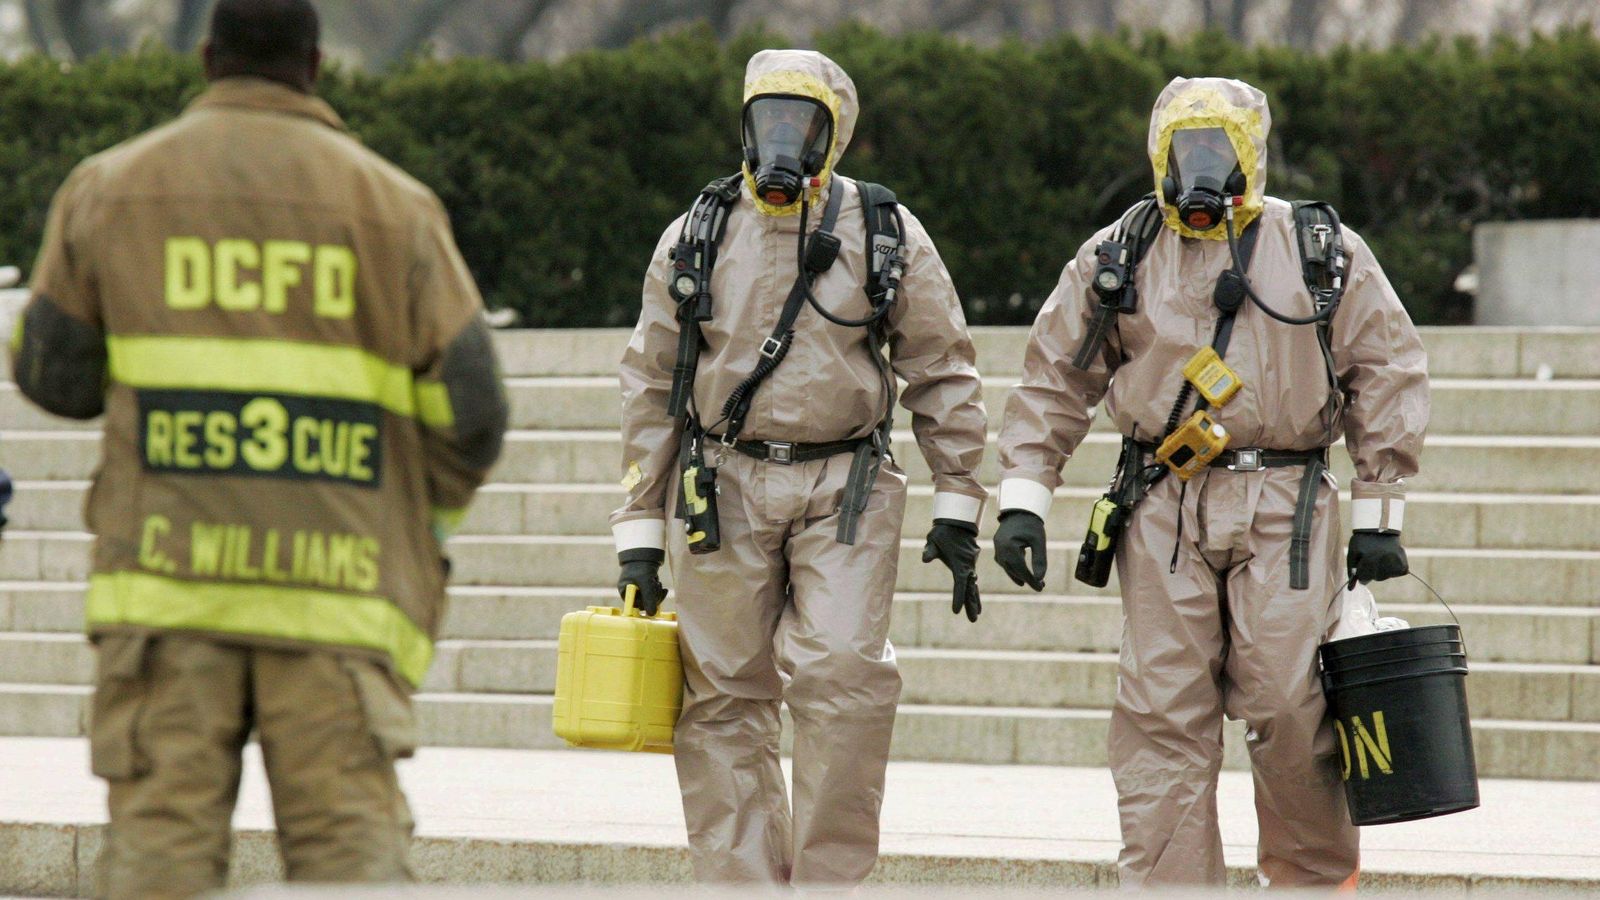 Foto: Un equipo de control de materiales peligrosos mientras trabajan junto al Lincoln Memorial de Washington DC (Efe).